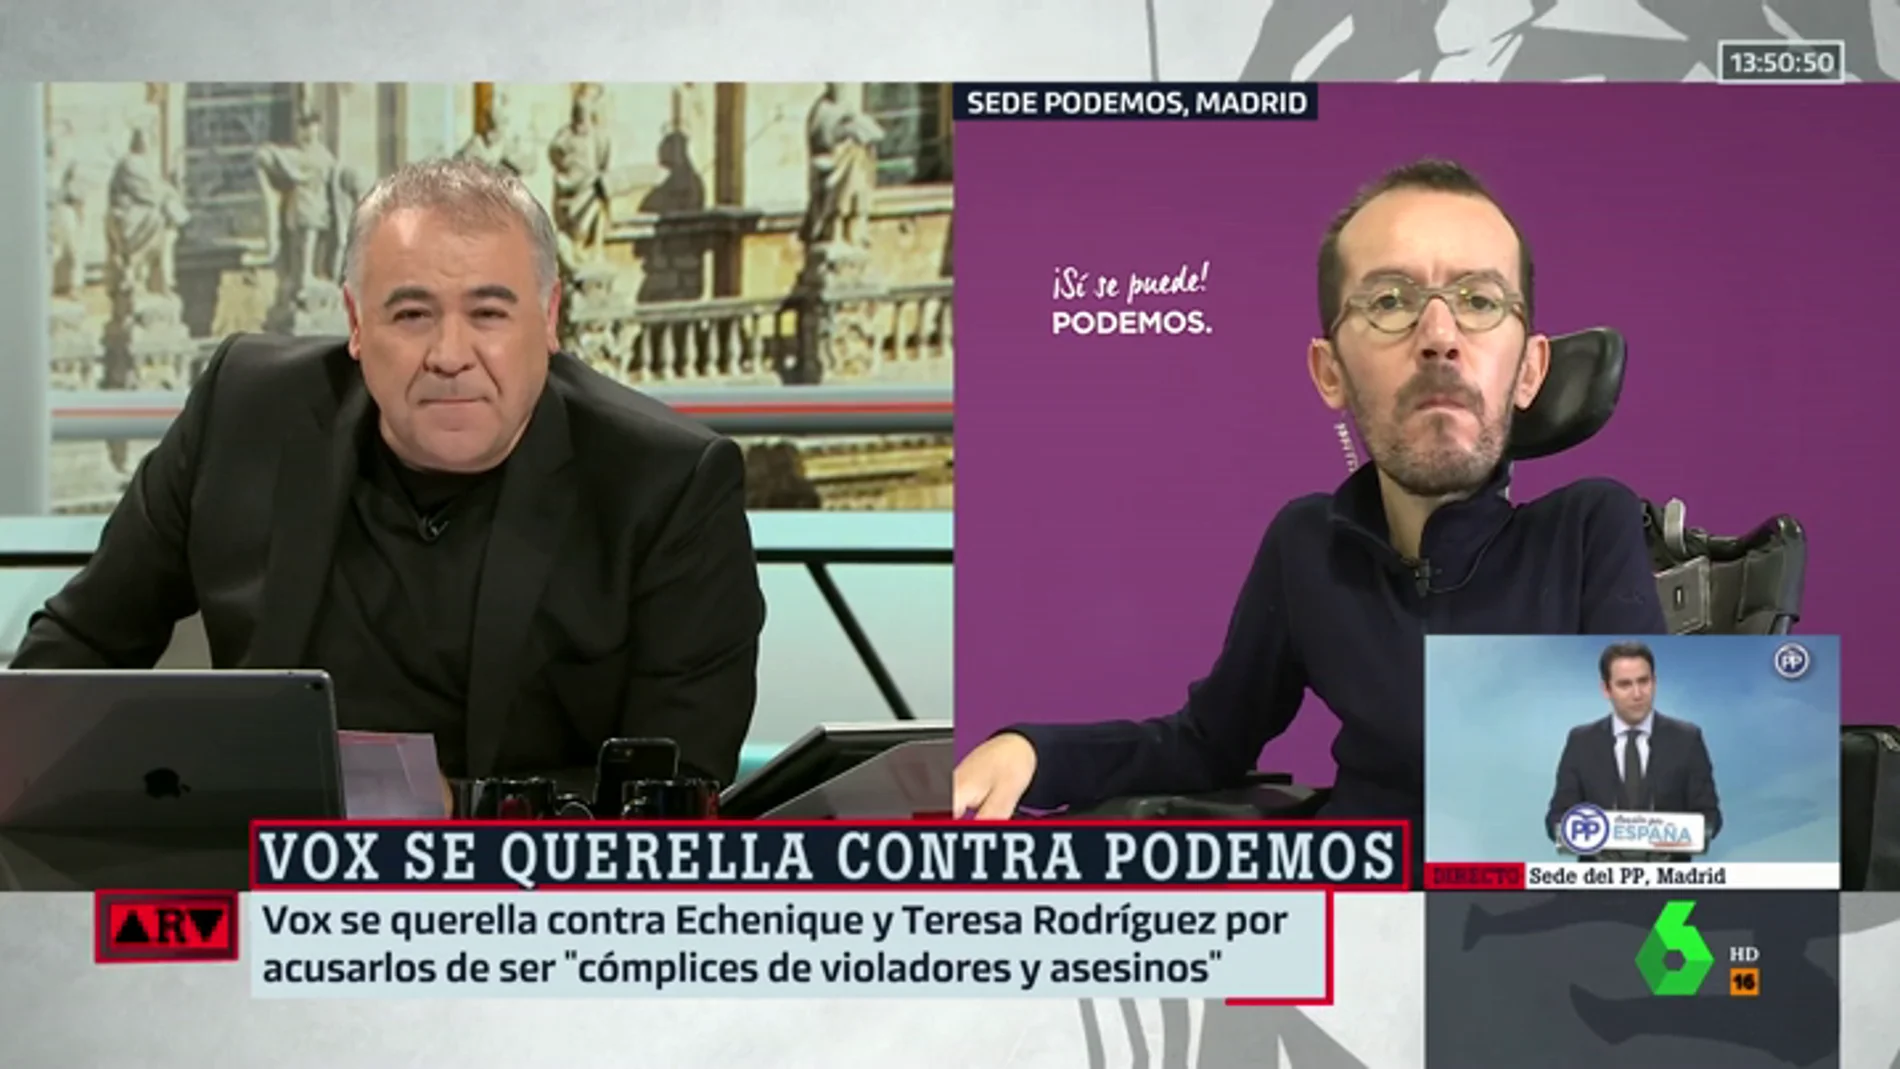 La reacción de Echenique a la querella de Vox: "Es normal que un partido neofranquista vaya contra Podemos y los periodistas"